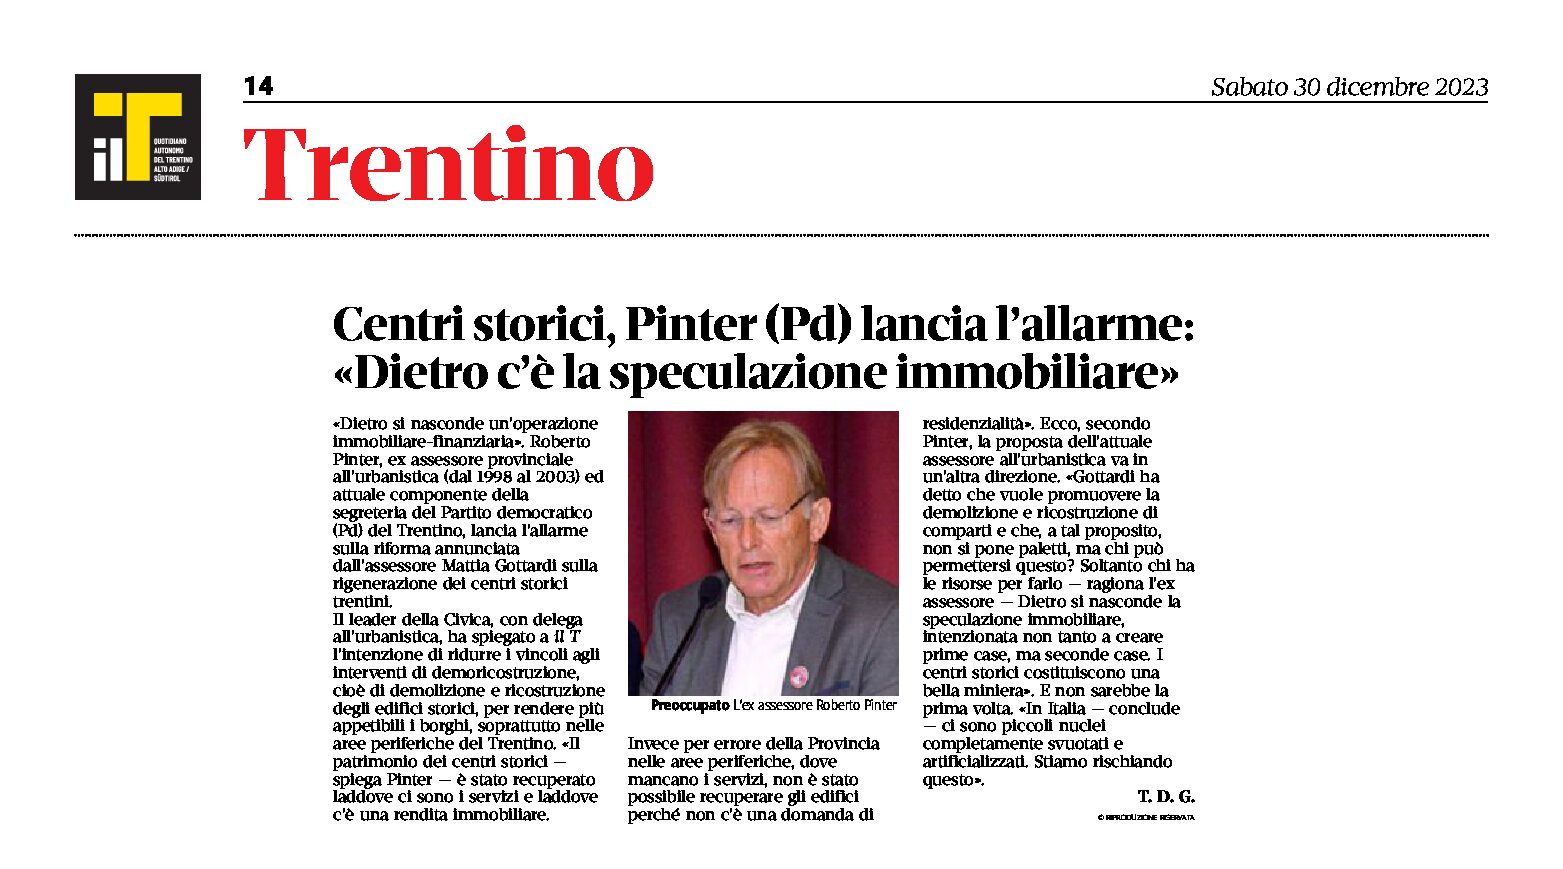 Trentino, centri storici: Pinter lancia l’allarme “dietro c’è la speculazione immobiliare”